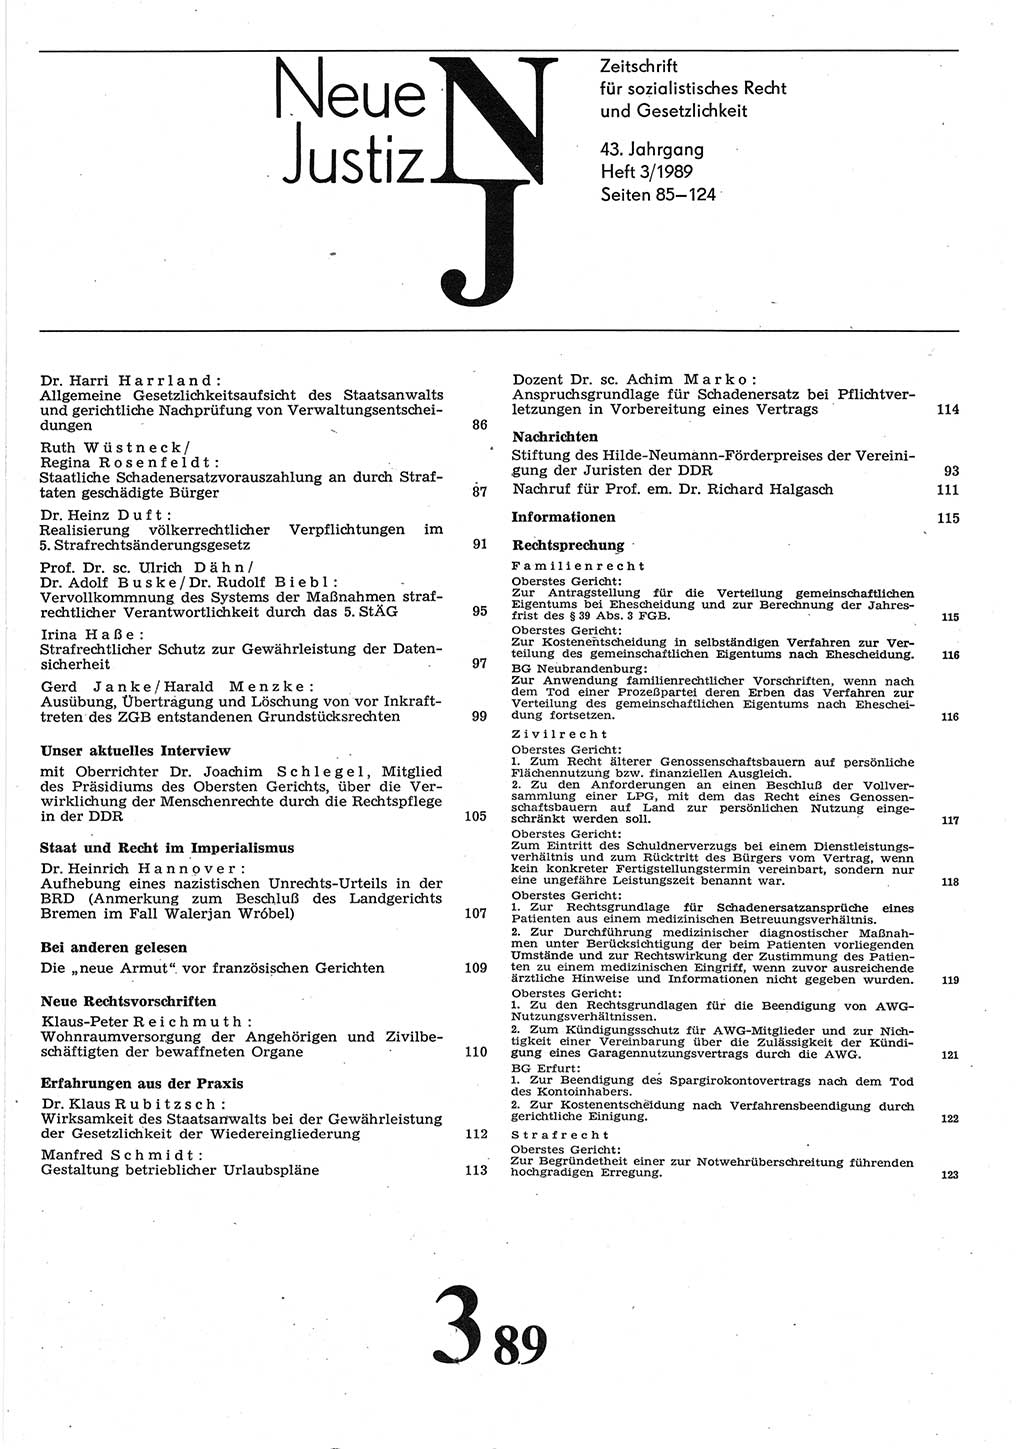 Neue Justiz (NJ), Zeitschrift für sozialistisches Recht und Gesetzlichkeit [Deutsche Demokratische Republik (DDR)], 43. Jahrgang 1989, Seite 85 (NJ DDR 1989, S. 85)